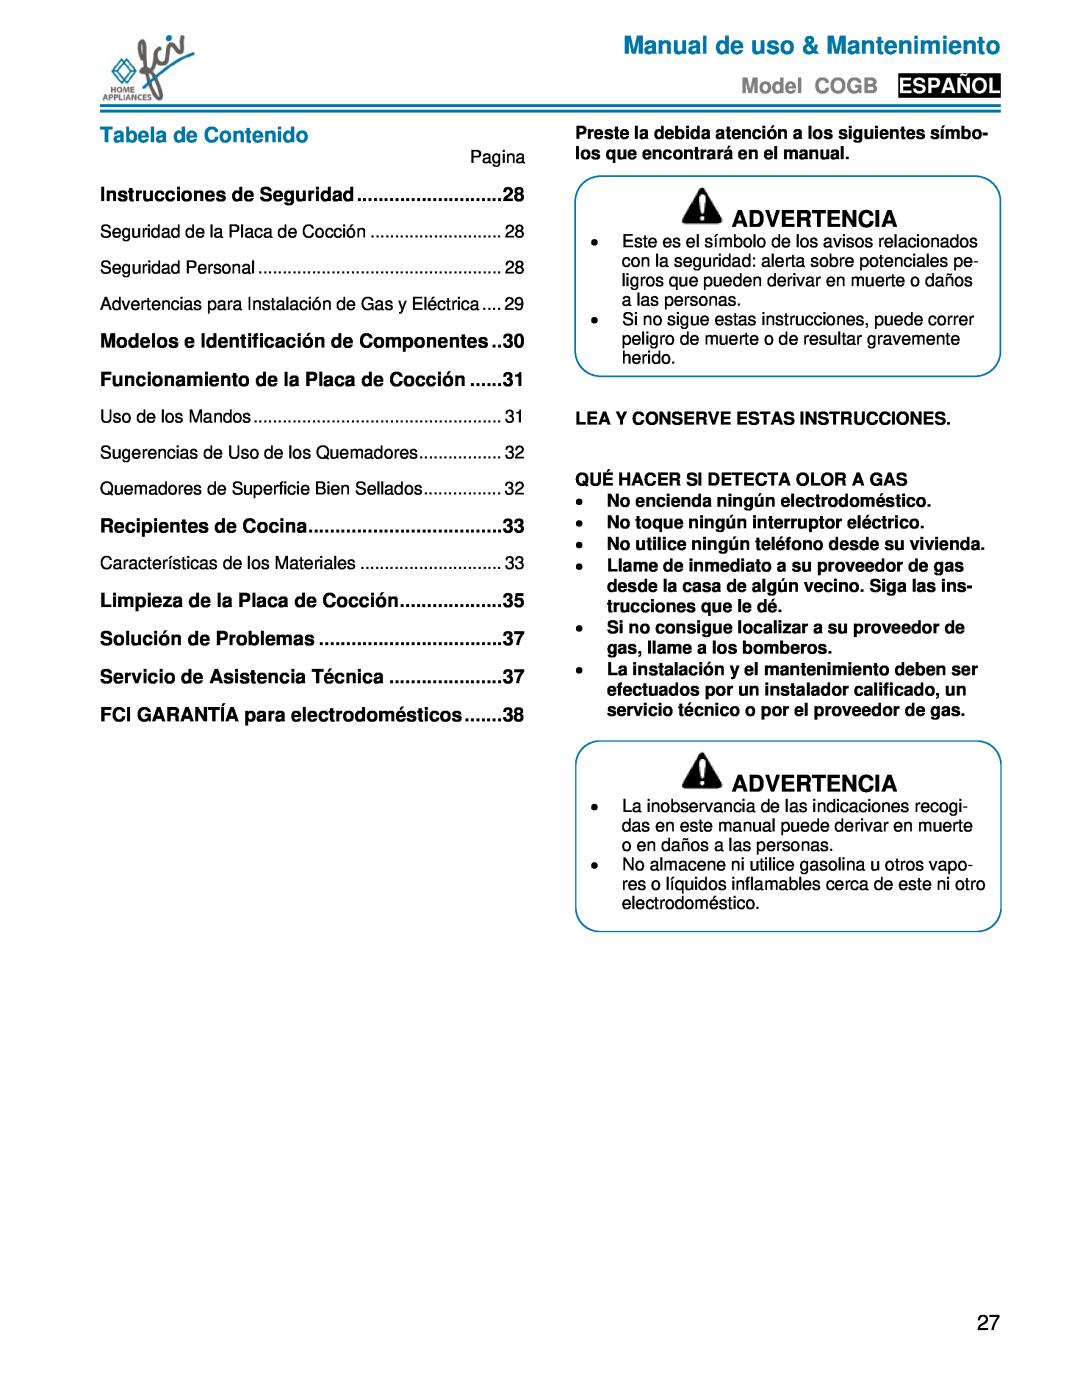 FCI Home Appliances COGB33062 Manual de uso & Mantenimiento, Advertencia, Tabela de Contenido, Español, Pagina, Model COGB 